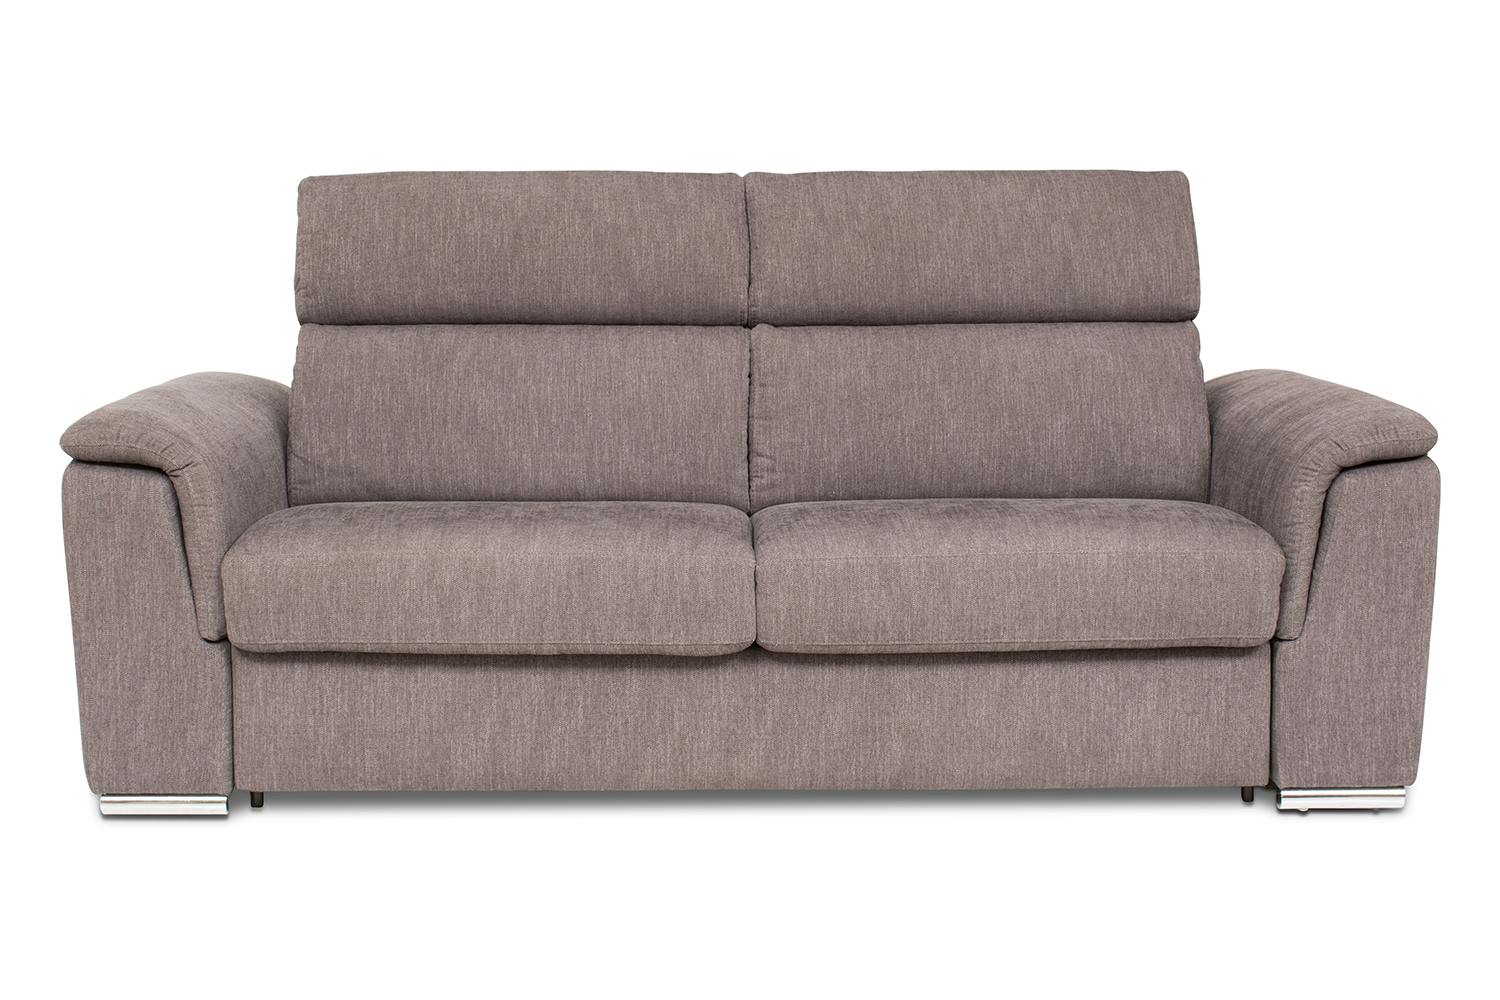 sofa beds dublin sale